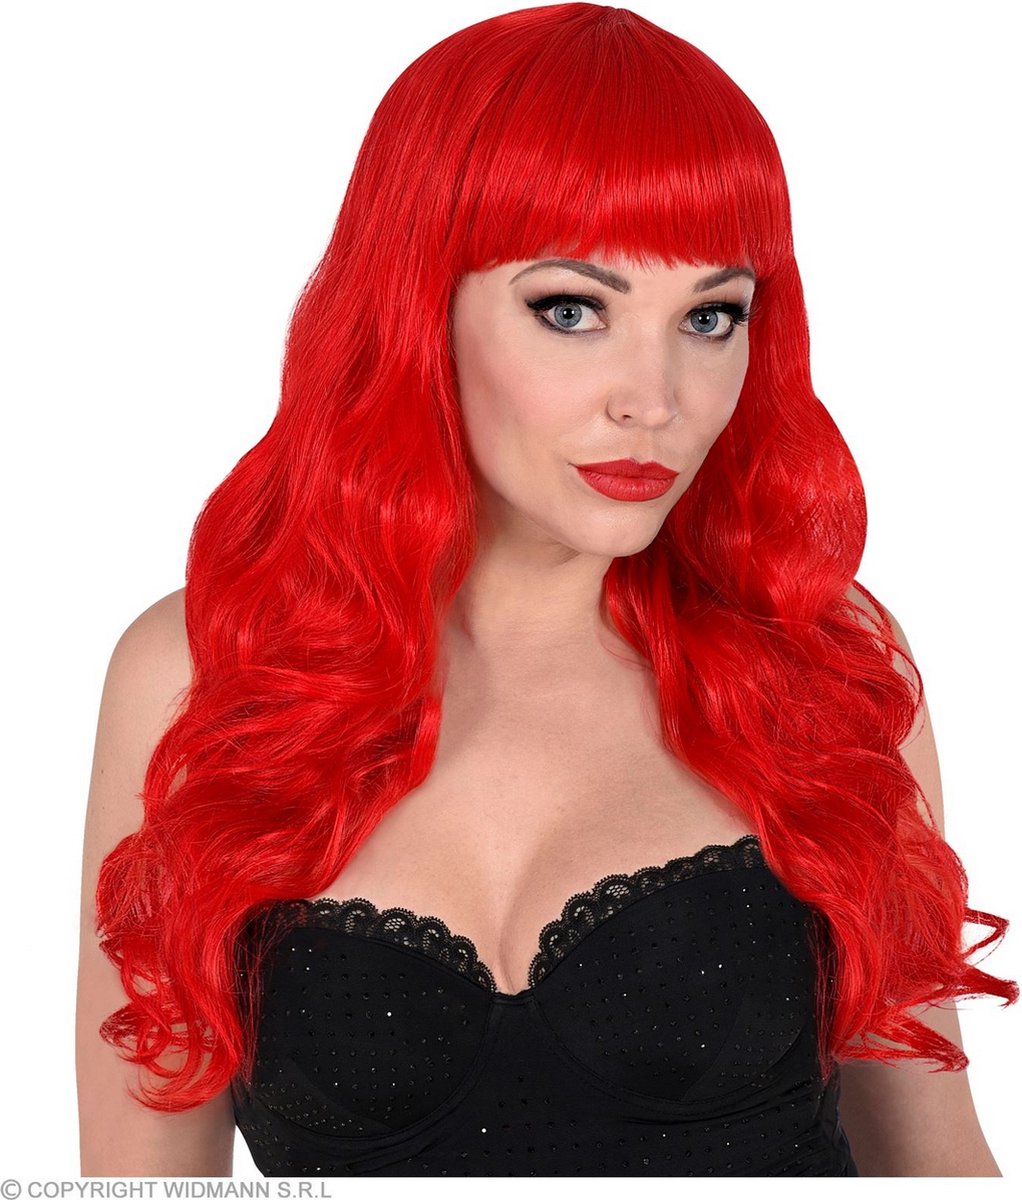 Widmann - Ariel de Zeemeermin Kostuum - Pruik Bella Von Oceanica, Rood - rood - Halloween - Verkleedkleding